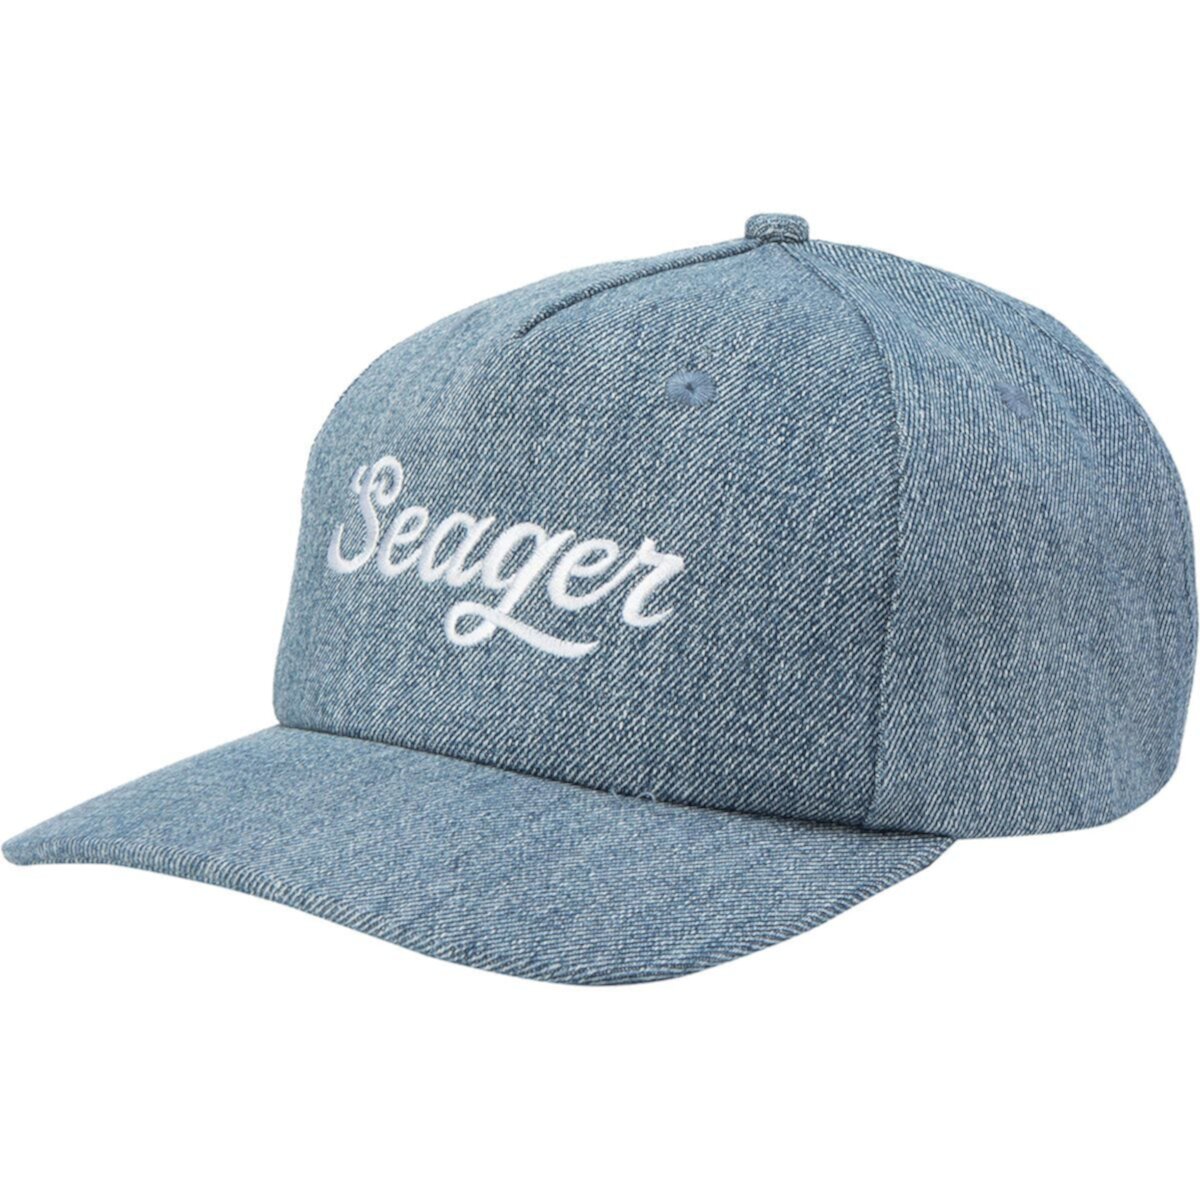 Большая джинсовая шляпа Snapback Seager Co.